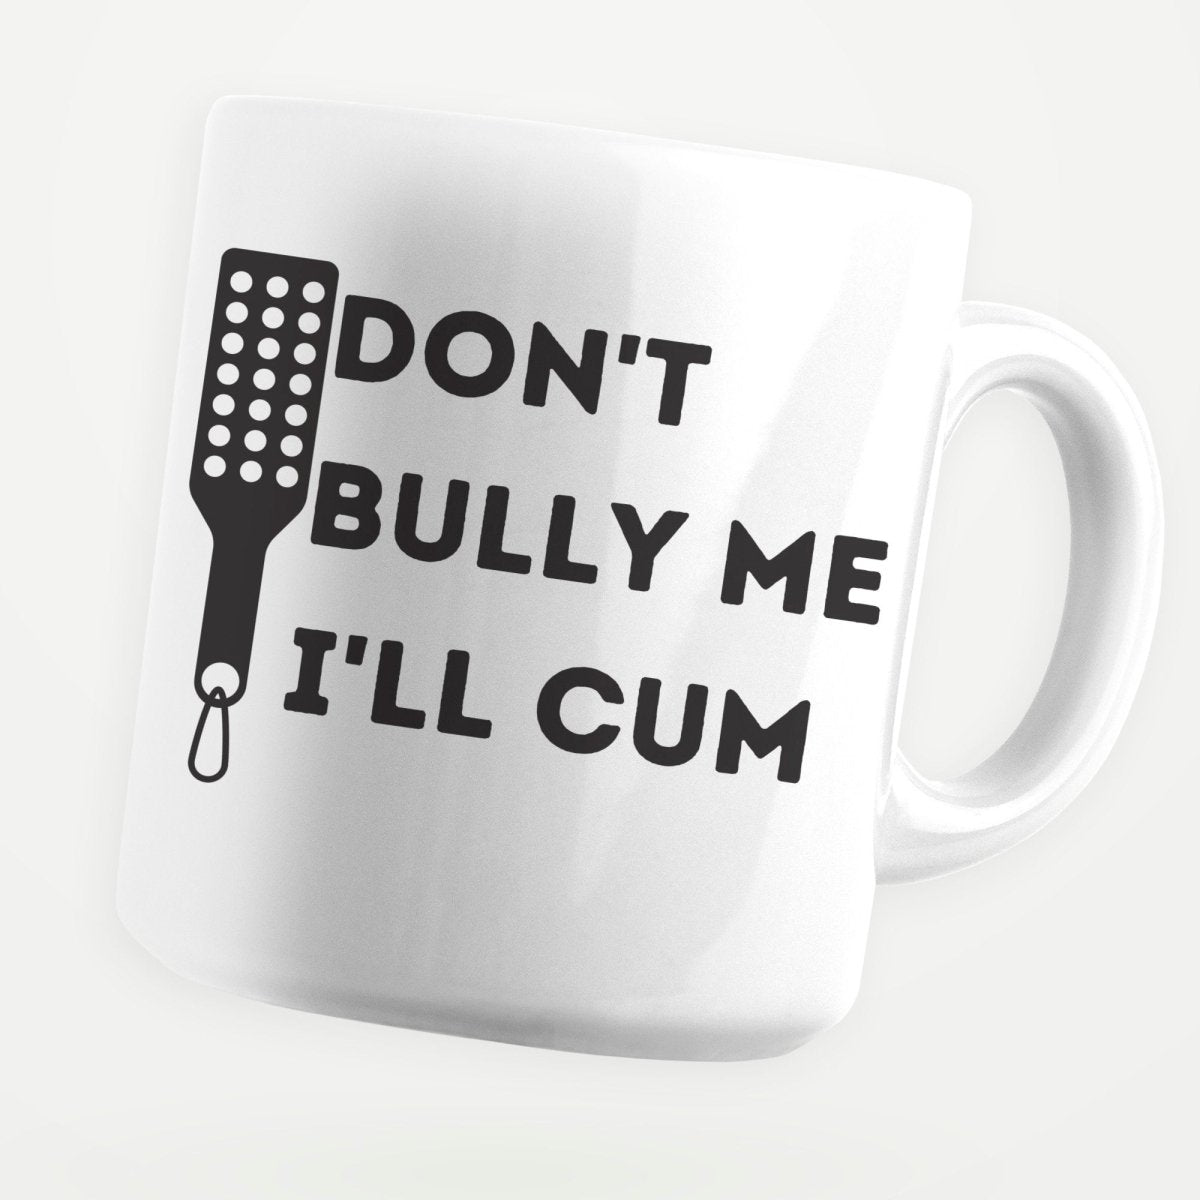 Don't Bully Me I'll Cum 11oz Coffee Mug - stickerbullDon't Bully Me I'll Cum 11oz Coffee MugMugsstickerbullstickerbullMug_Don'tBullyMeI'llCumDon't Bully Me I'll Cum 11oz Coffee Mug